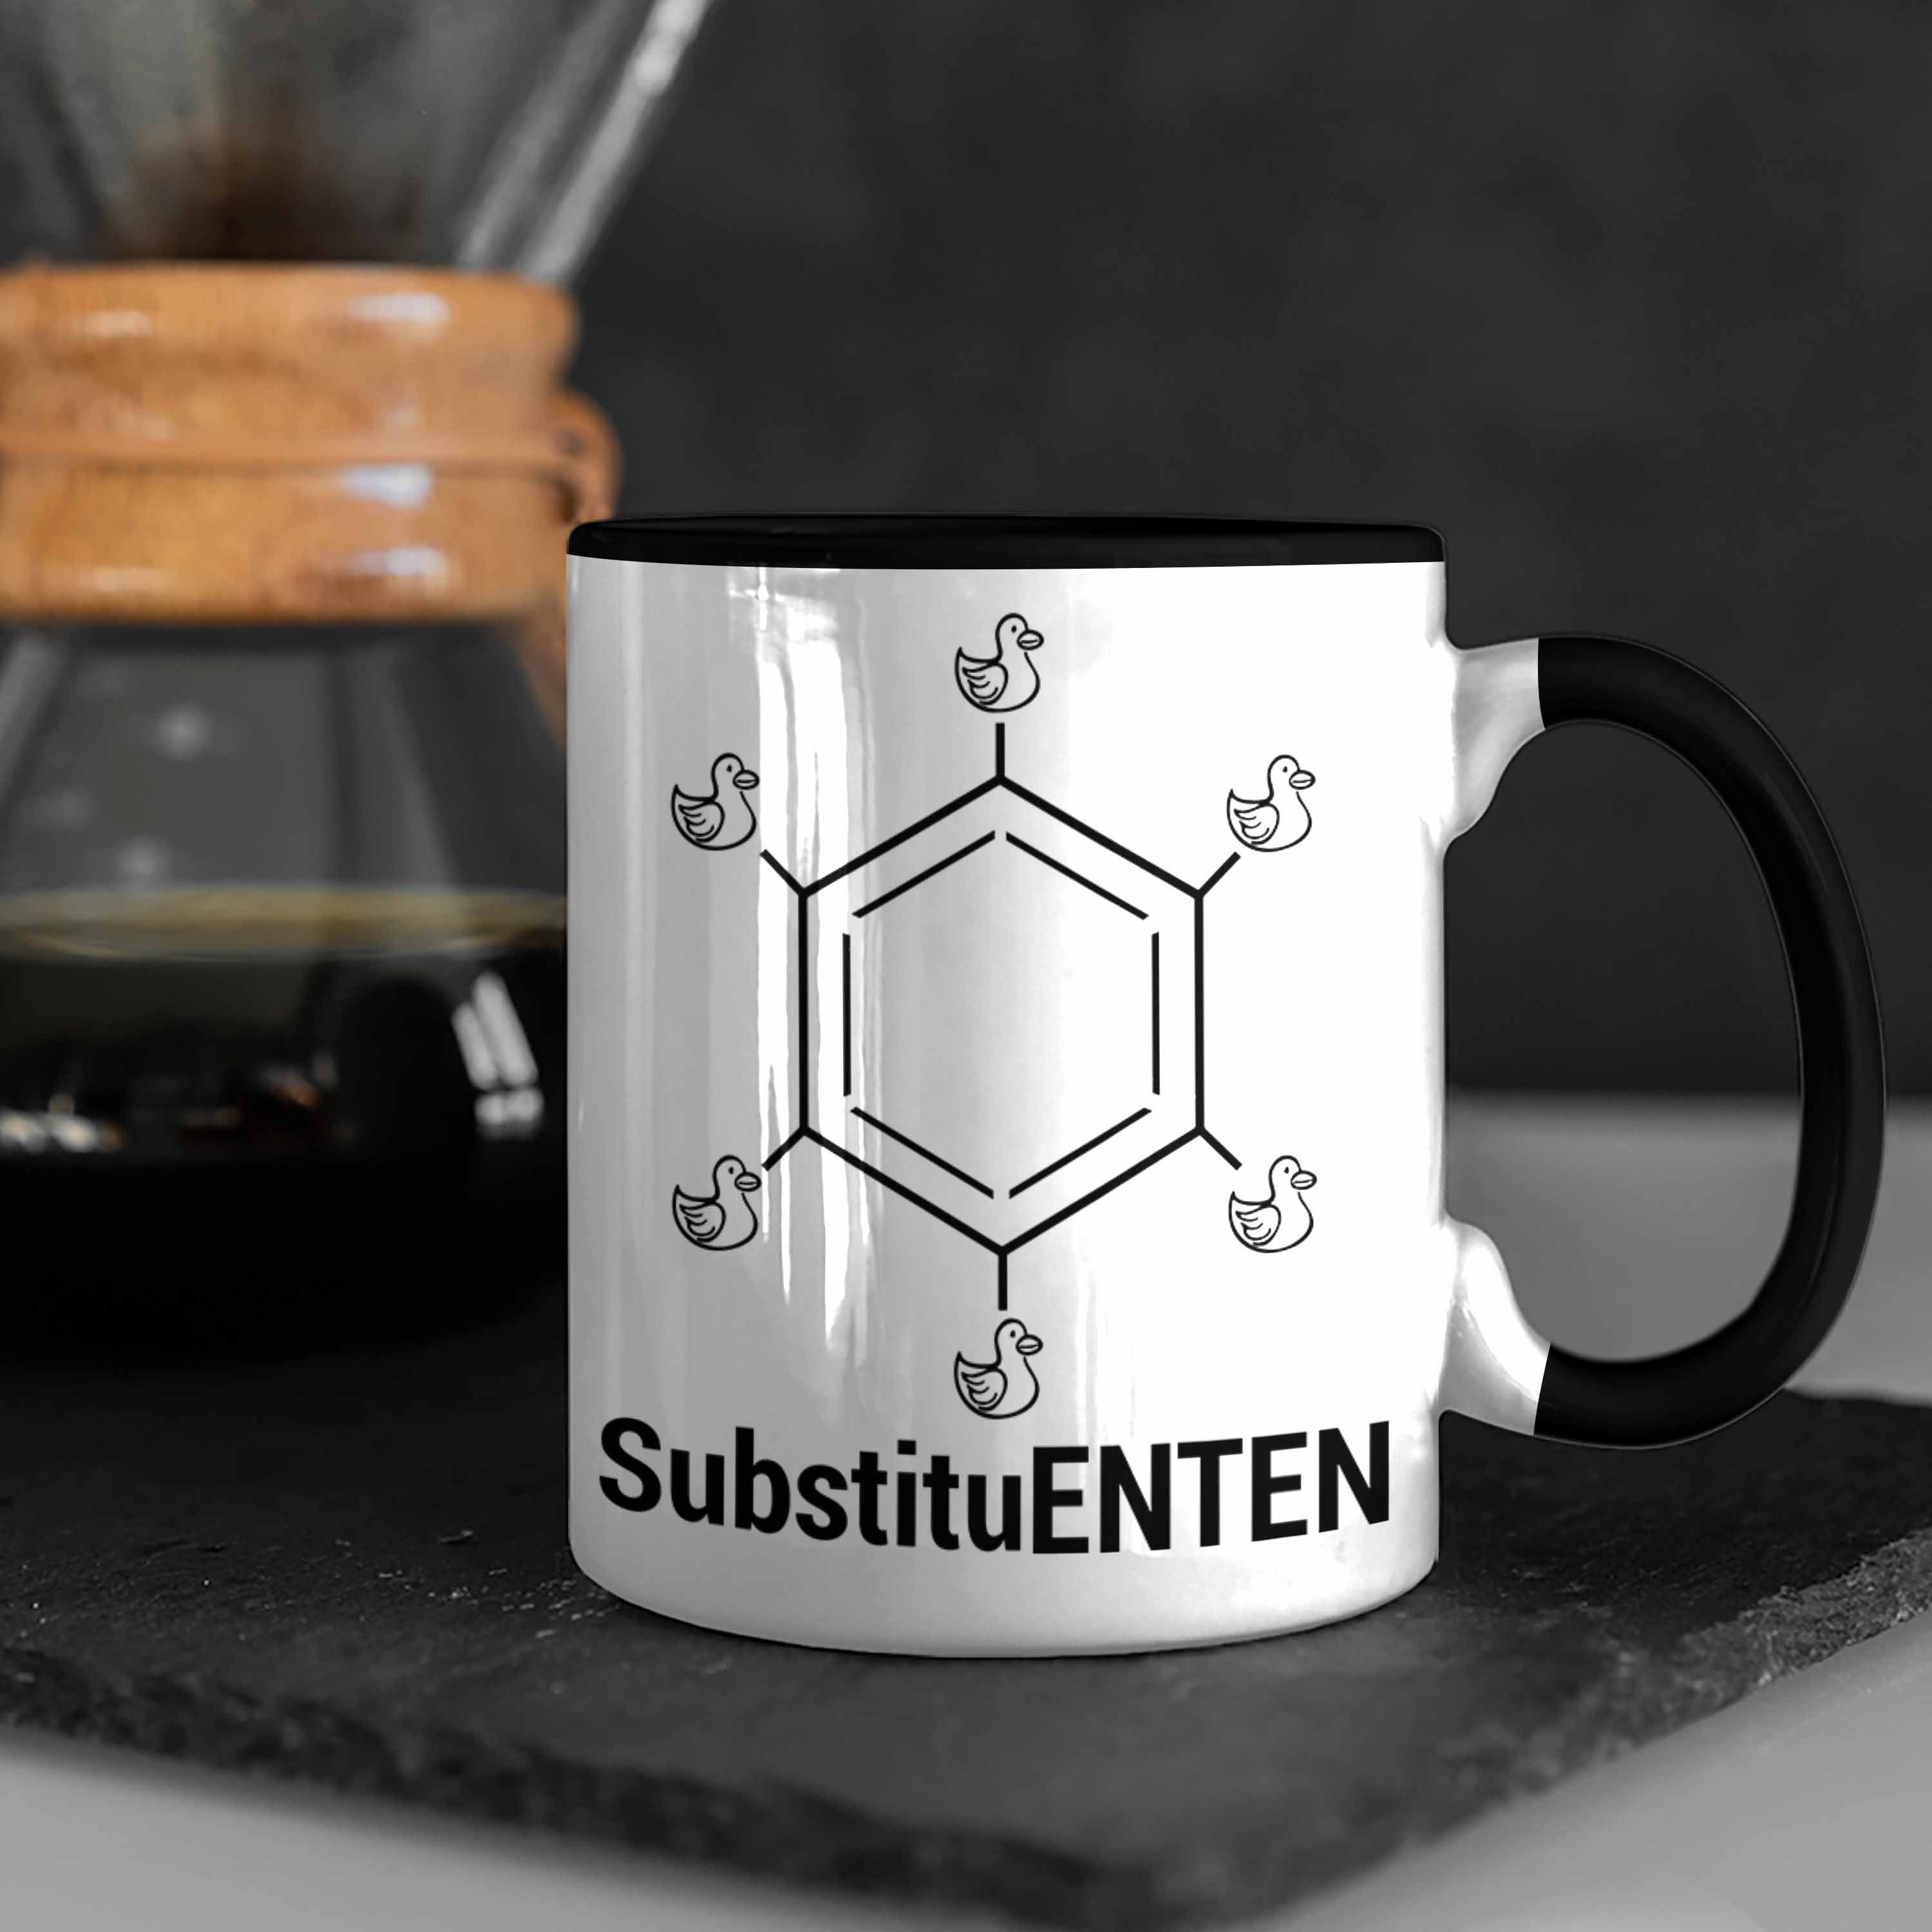 Witz Schwarz Chemie Chemie Kaffee Organische Chemiker Tasse SubstituENTEN Tasse Trendation Ente